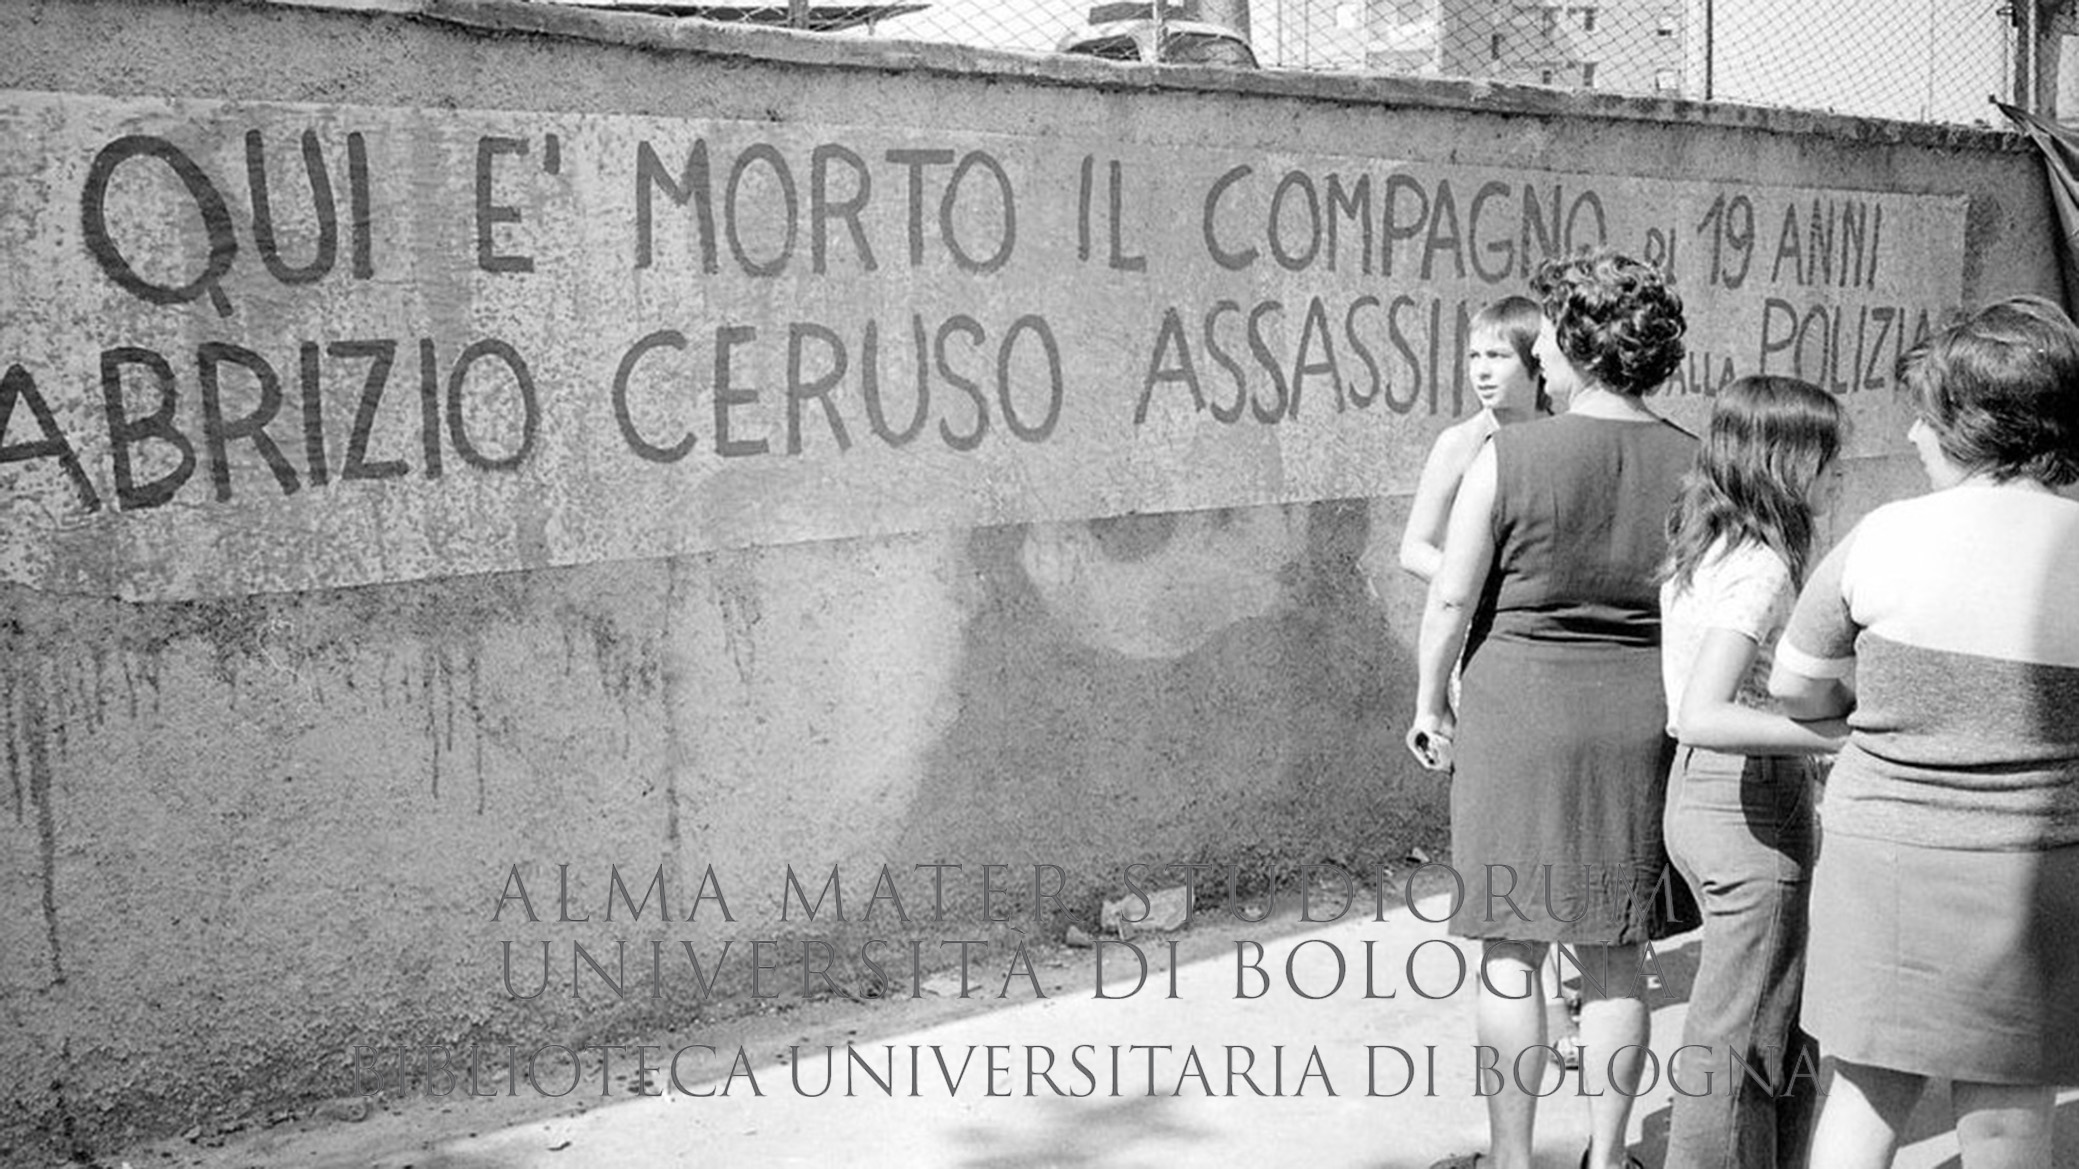 1974: San Basilio il giorno dopo l'uccisione di Fabrizio Ceruso. Roma, 9.9.1974